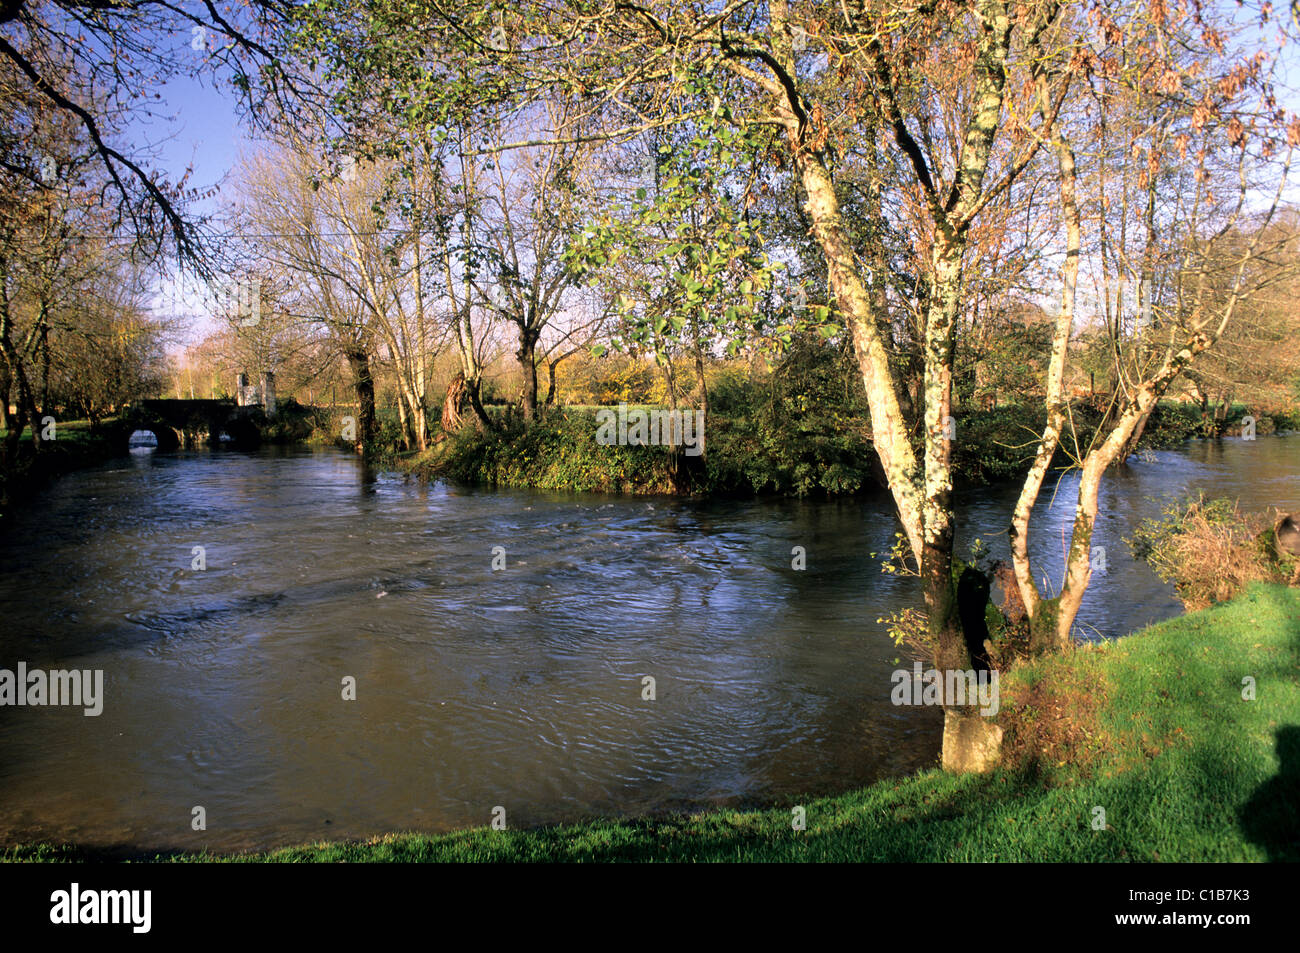 France, Charente, brigde over a Charente river's arm Stock Photo